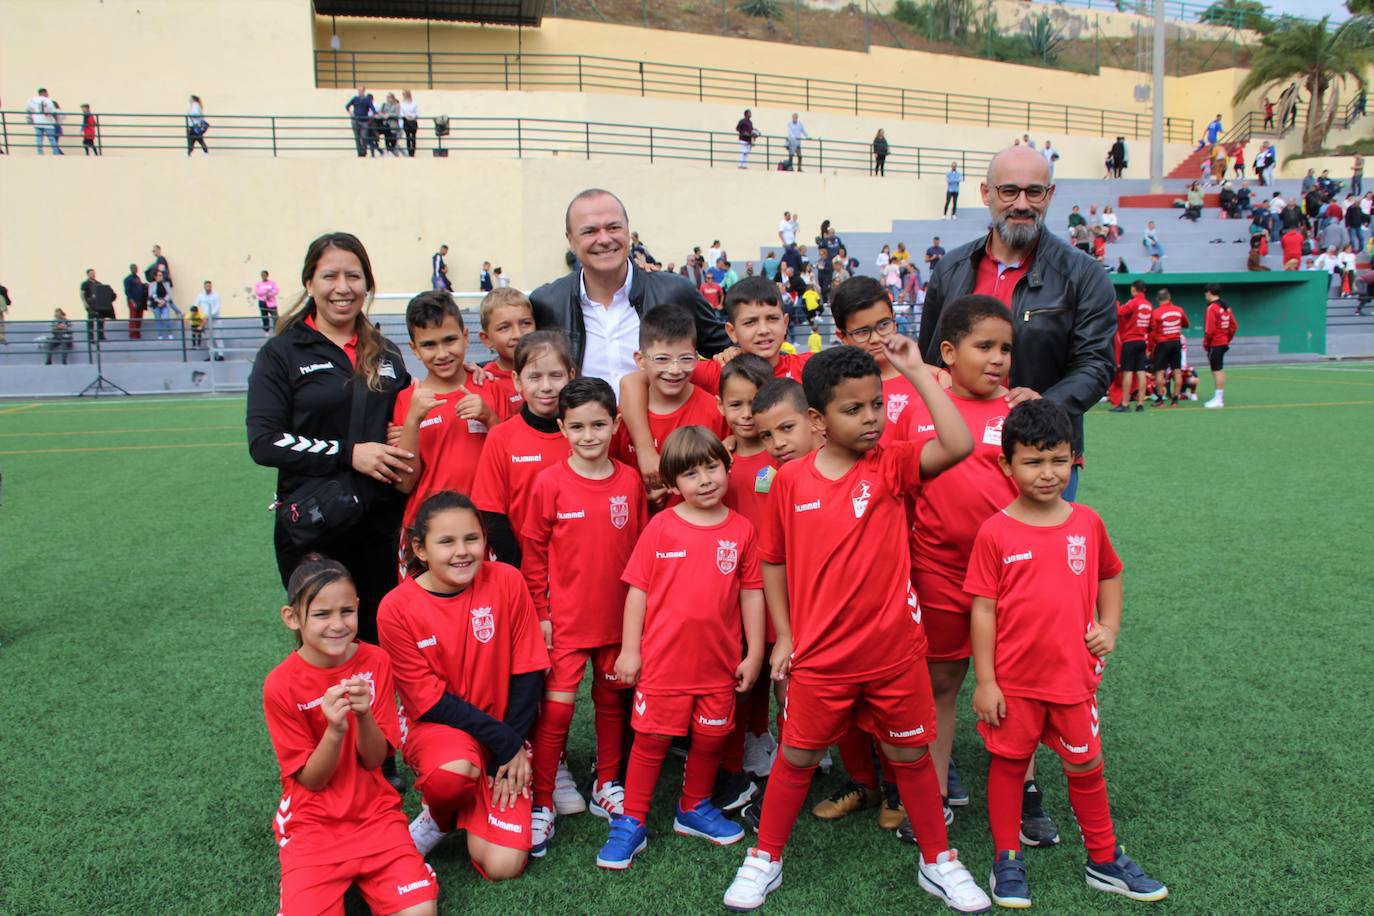 Imagen principal - El Ayuntamiento pone en marcha una nueva edición de la Liga de Escuelas Municipales de Fútbol 8